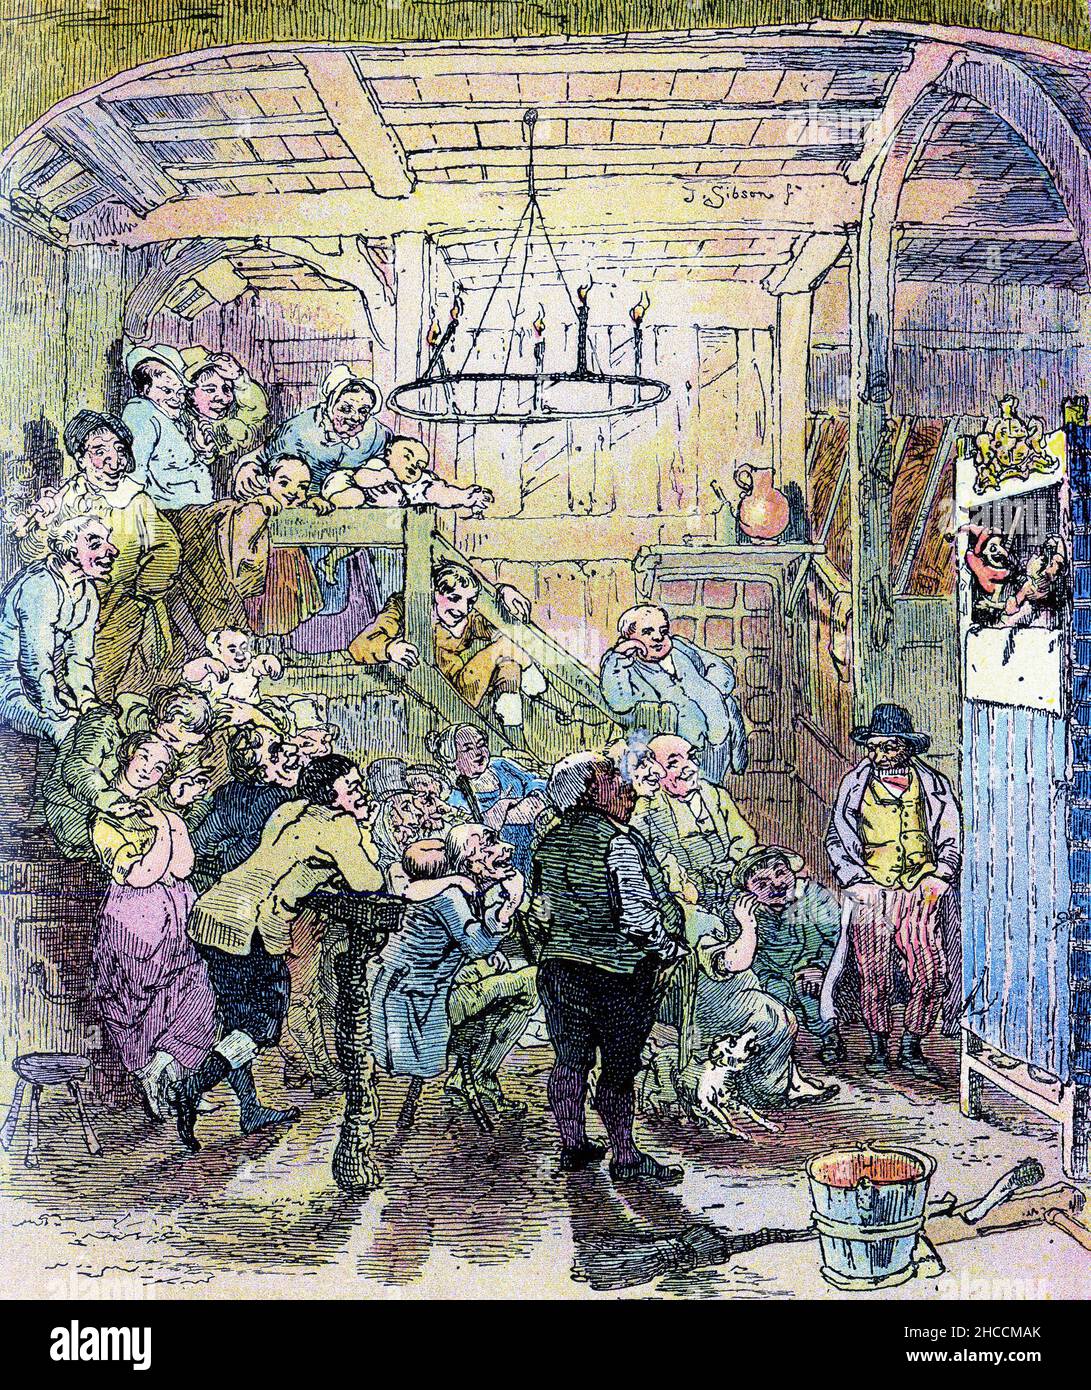 Farbiger Halbton einer Punch and Judy Show im Inn, einer Szene aus einem viktorianischen Buch von Charles Dickens, das um 1908 veröffentlicht wurde Stockfoto